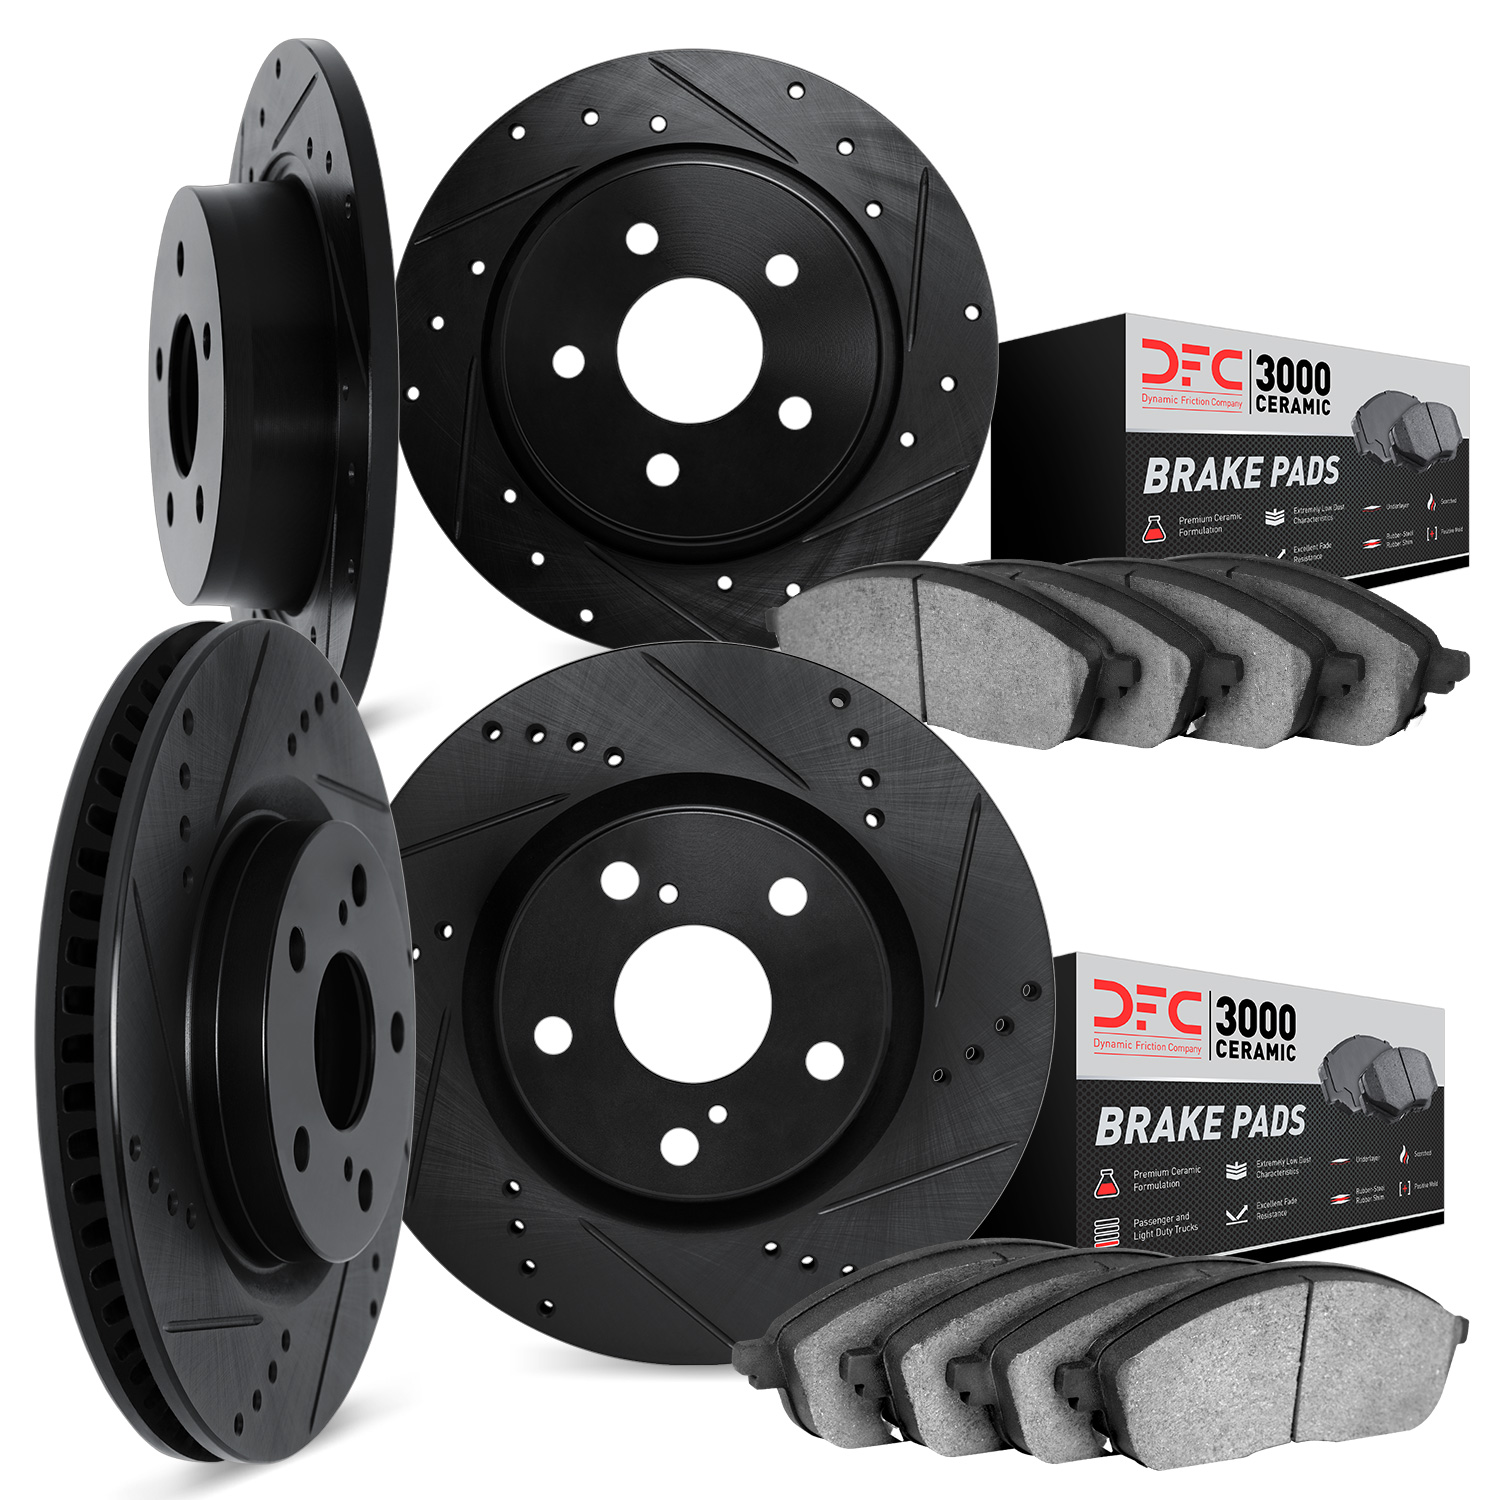 8304-03076 Drilled/Slotted Brake Rotors with 3000-Series Ceramic Brake Pads Kit [Black], Fits Select Kia/Hyundai/Genesis, Positi